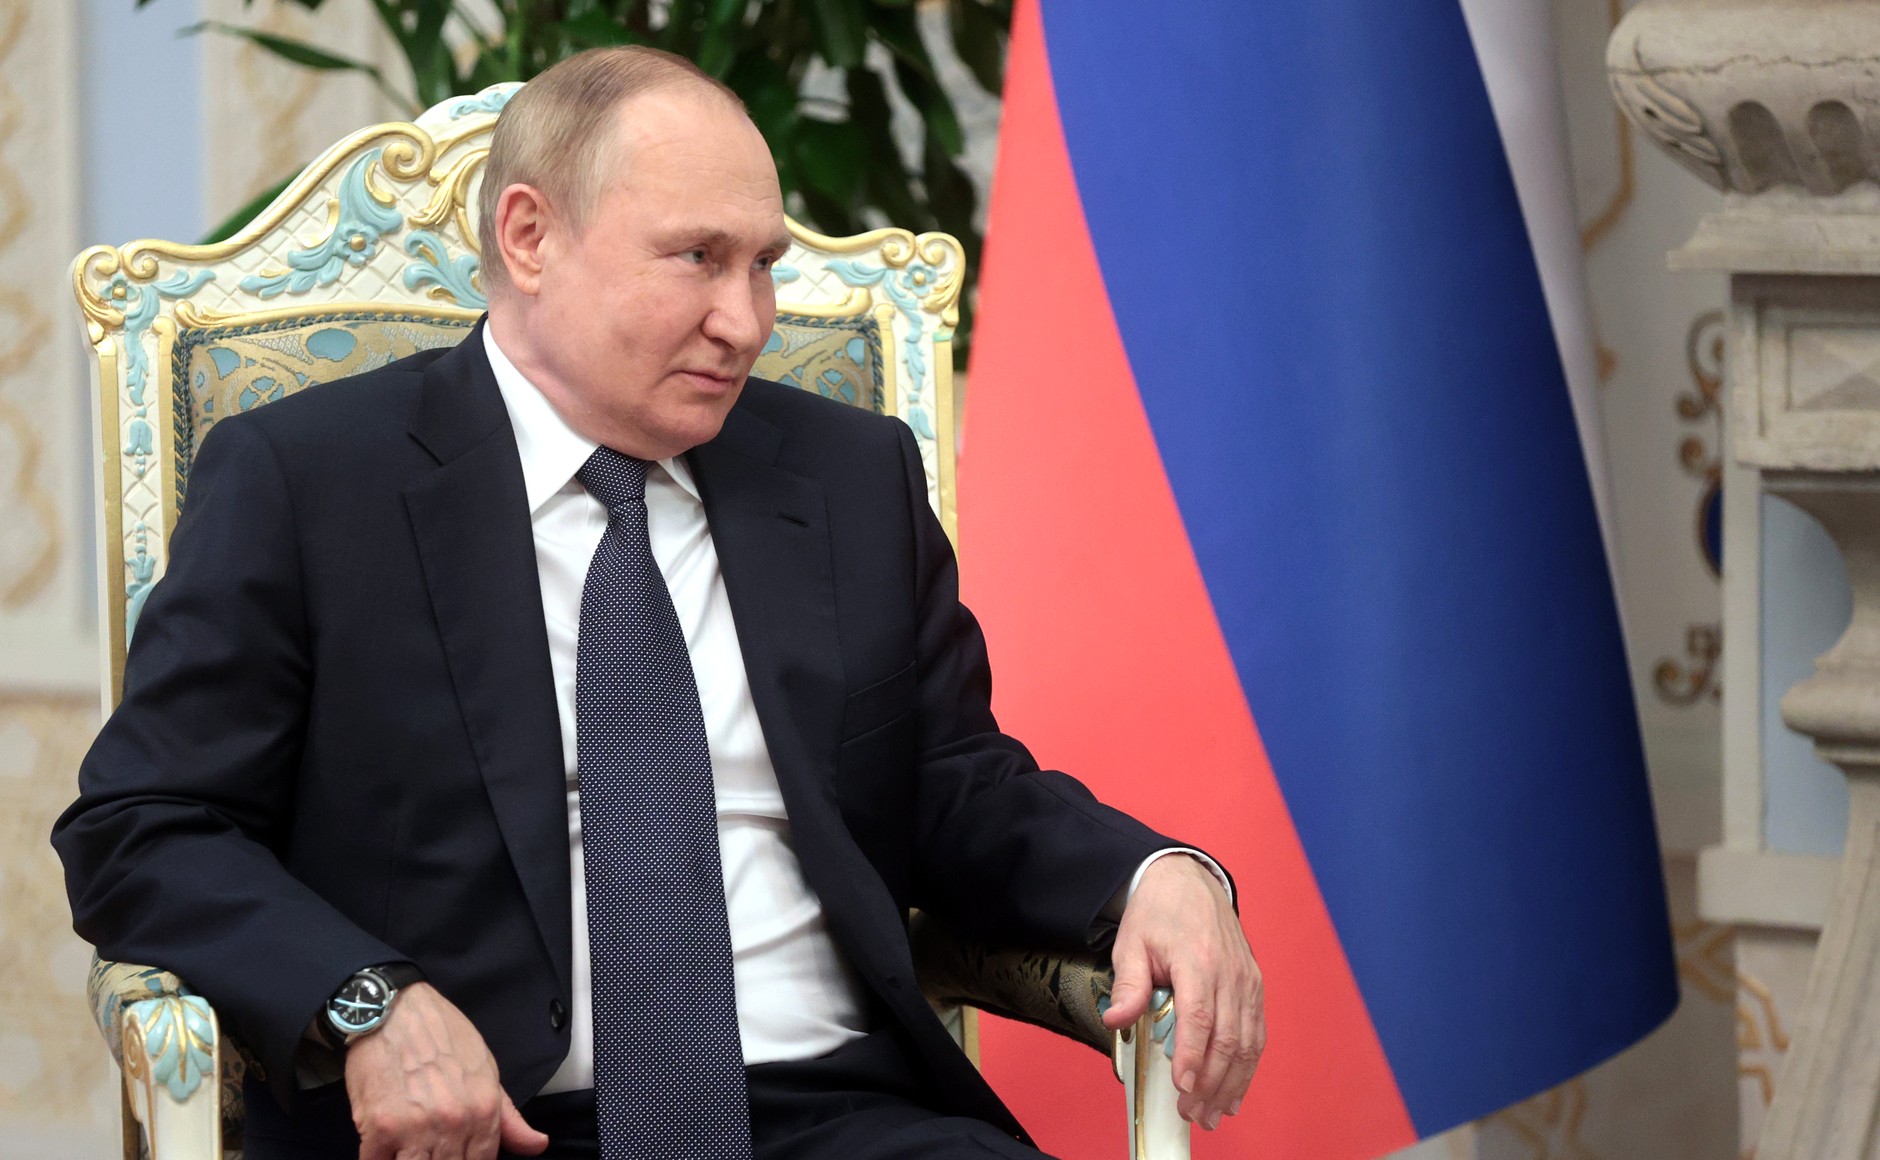 "Оказывается, Путин был прав" : Американцы поддержали Россию после признания Болтона о подготовке госпереворотов